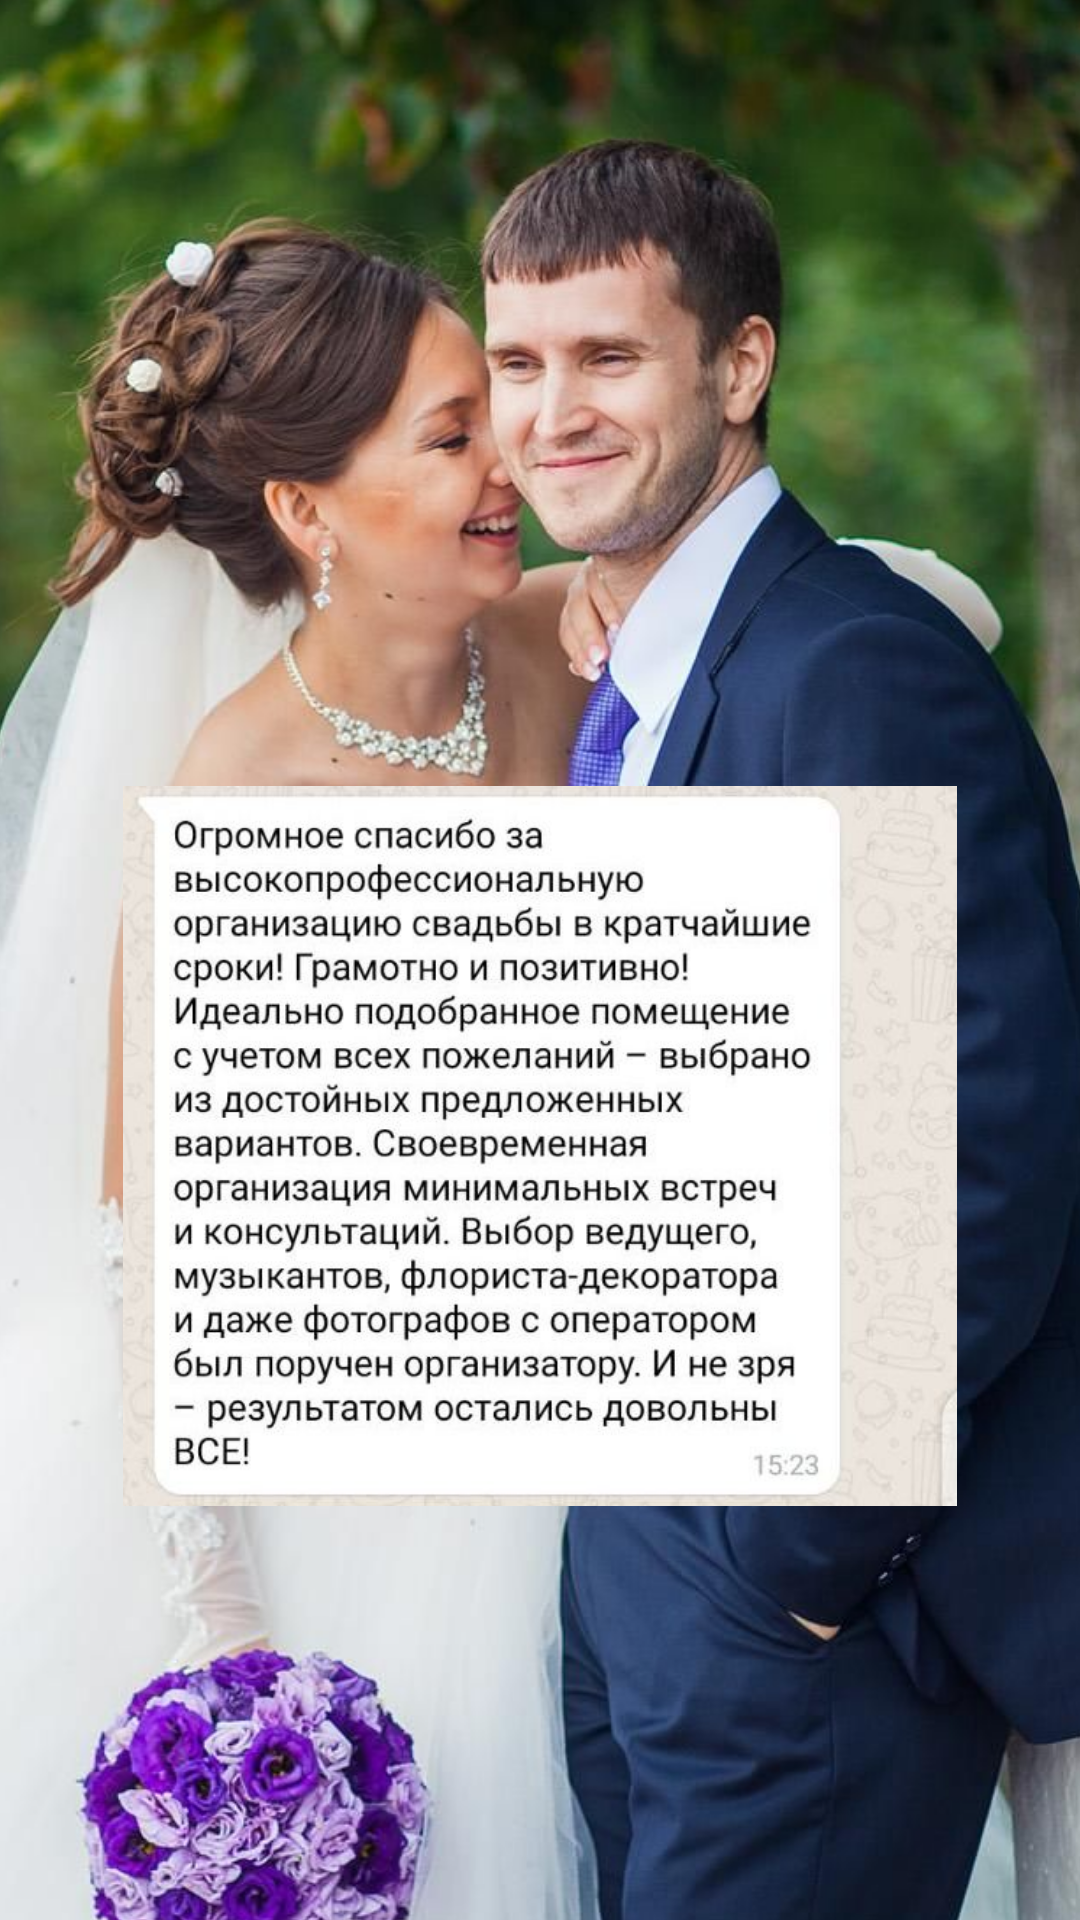 Организация свадьбы во Владивостоке
от компании Pandaevent